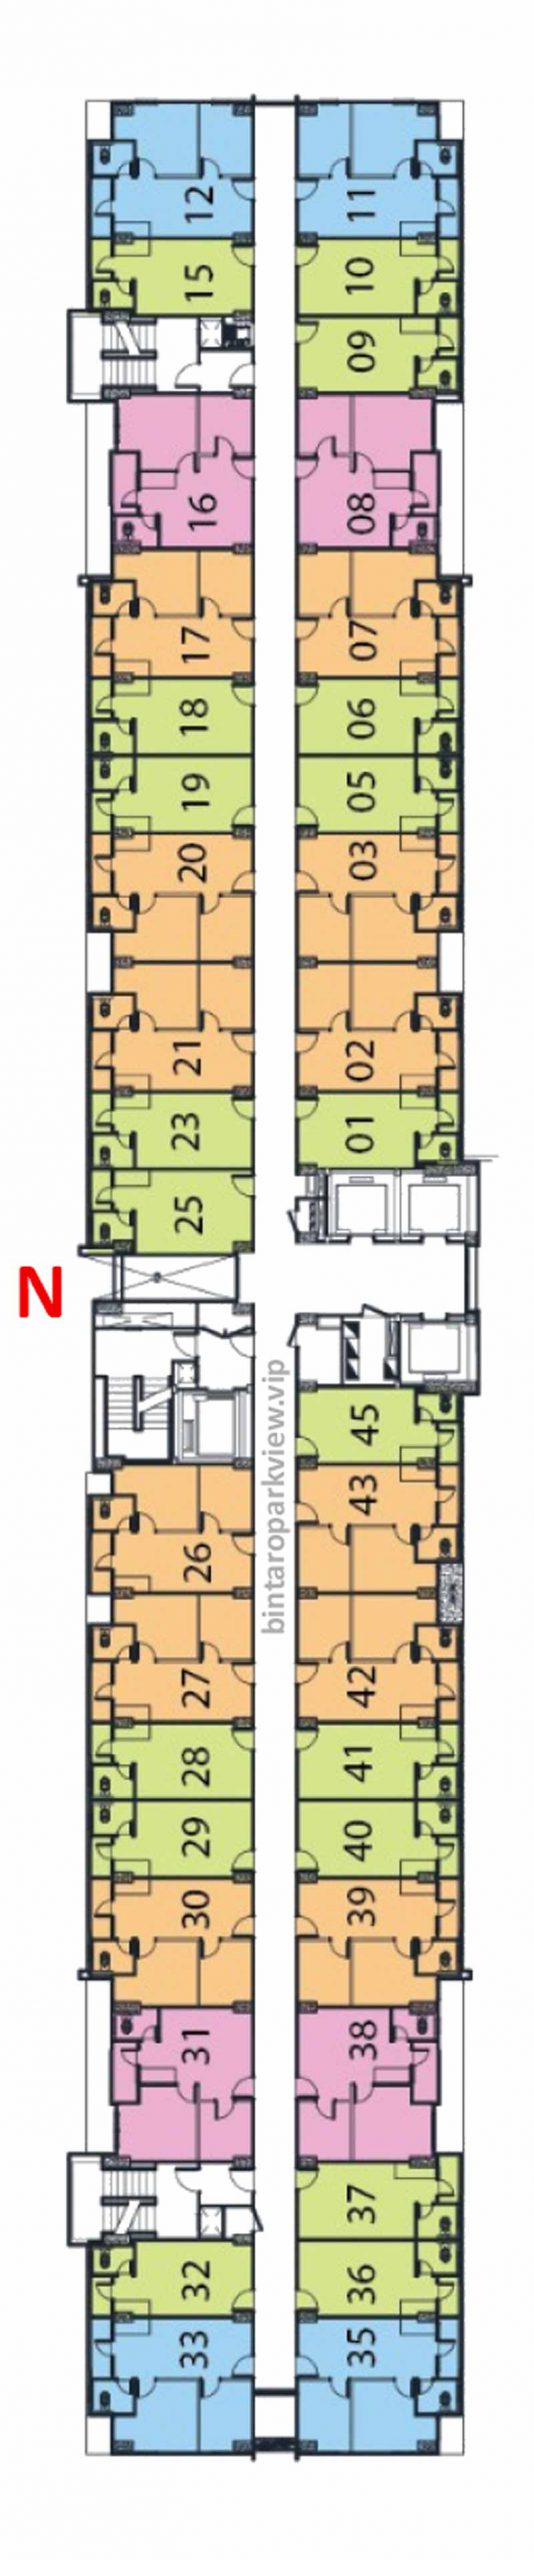 Floor Plan Apartemen Bintaro Parkview